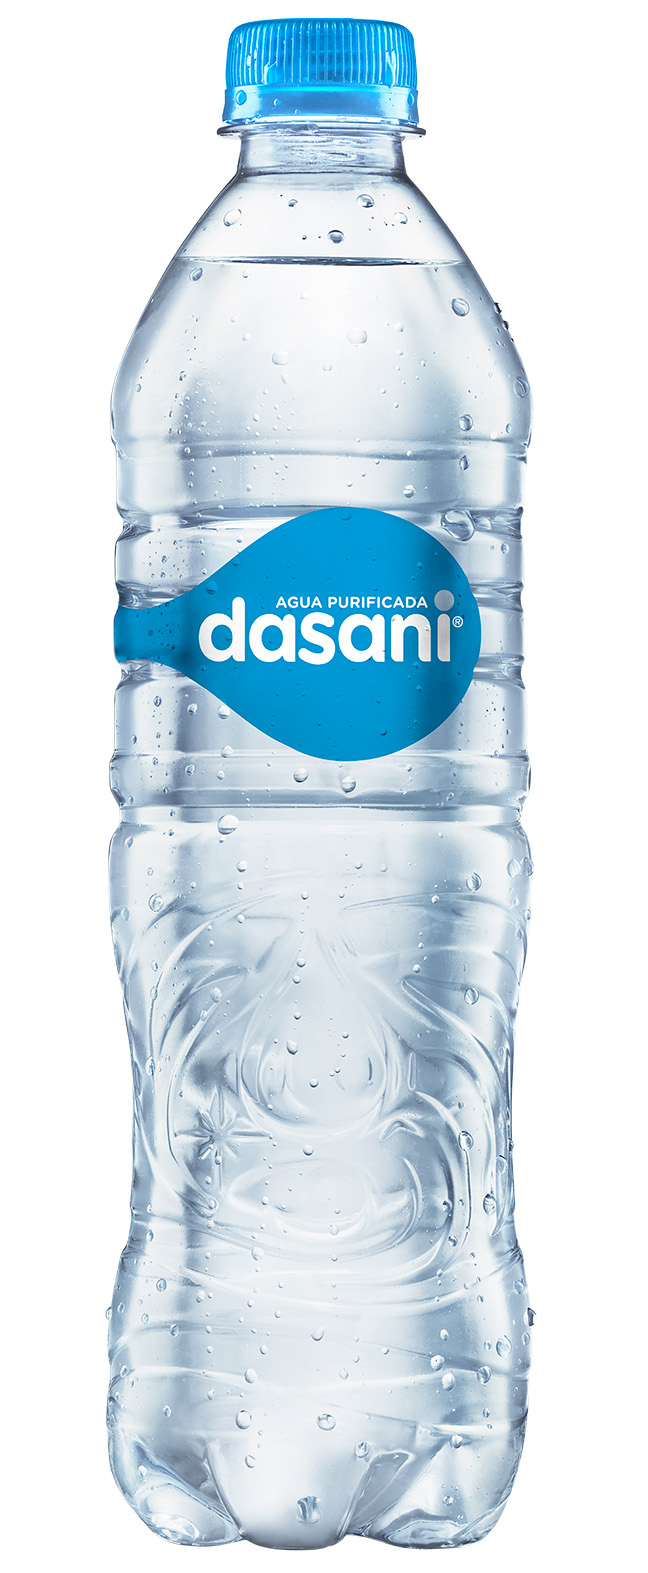 Botella de Dasani